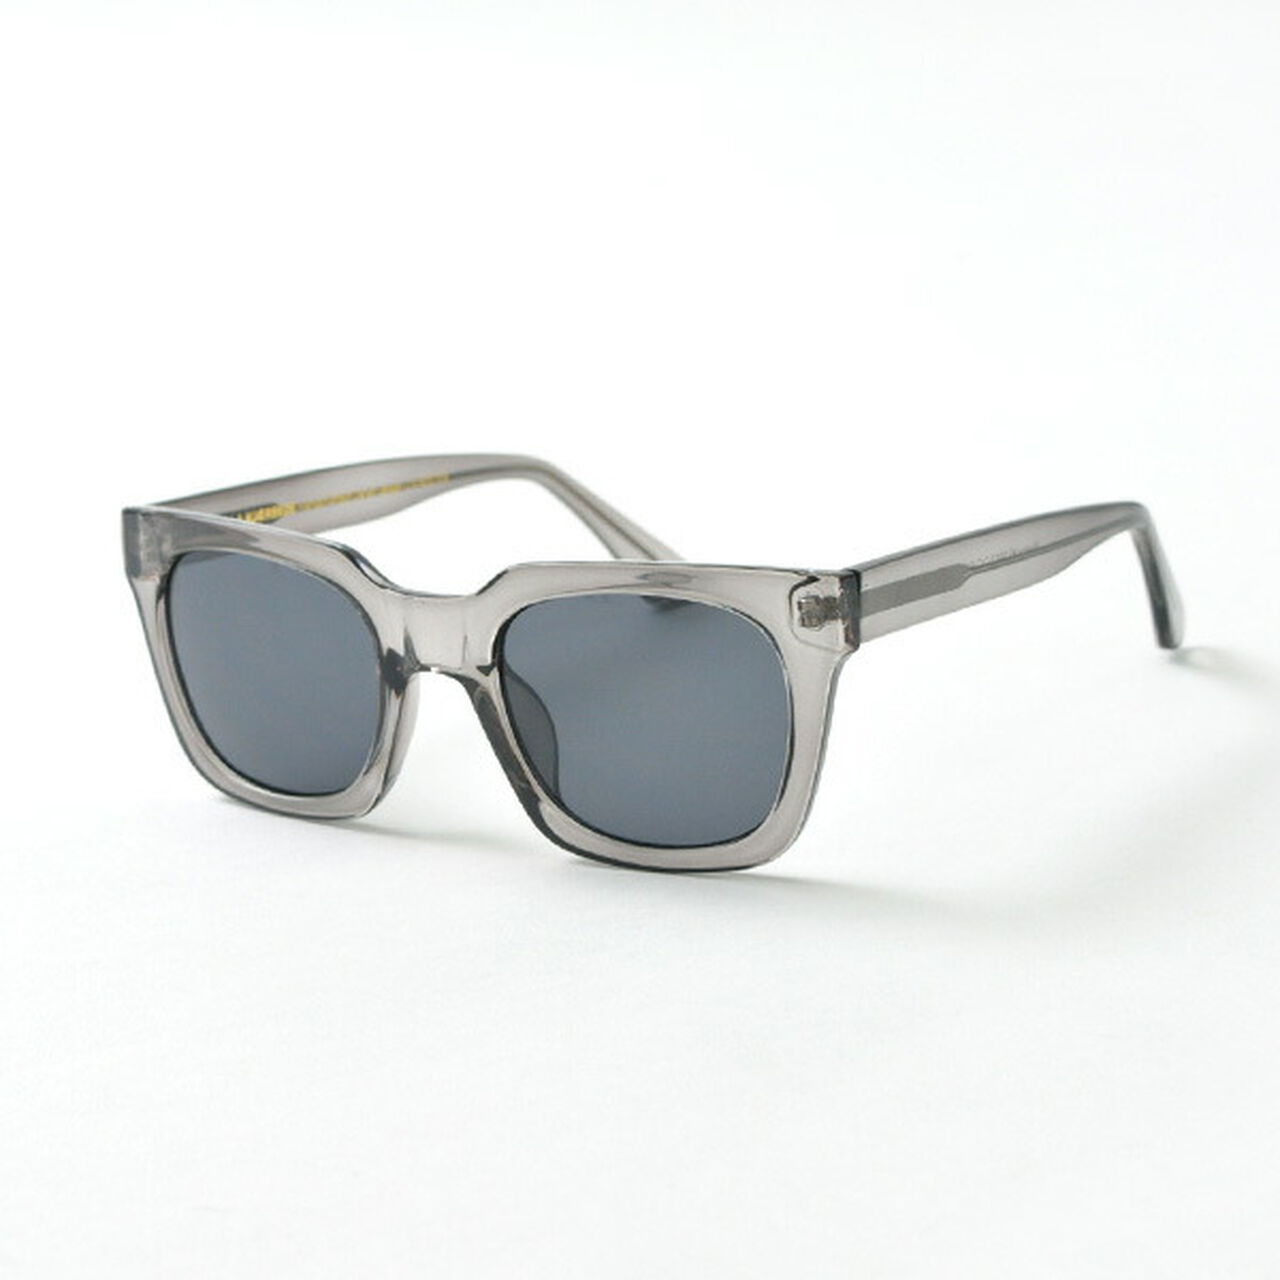 NANCY wide frame sunglasses,Grey, large image number 0